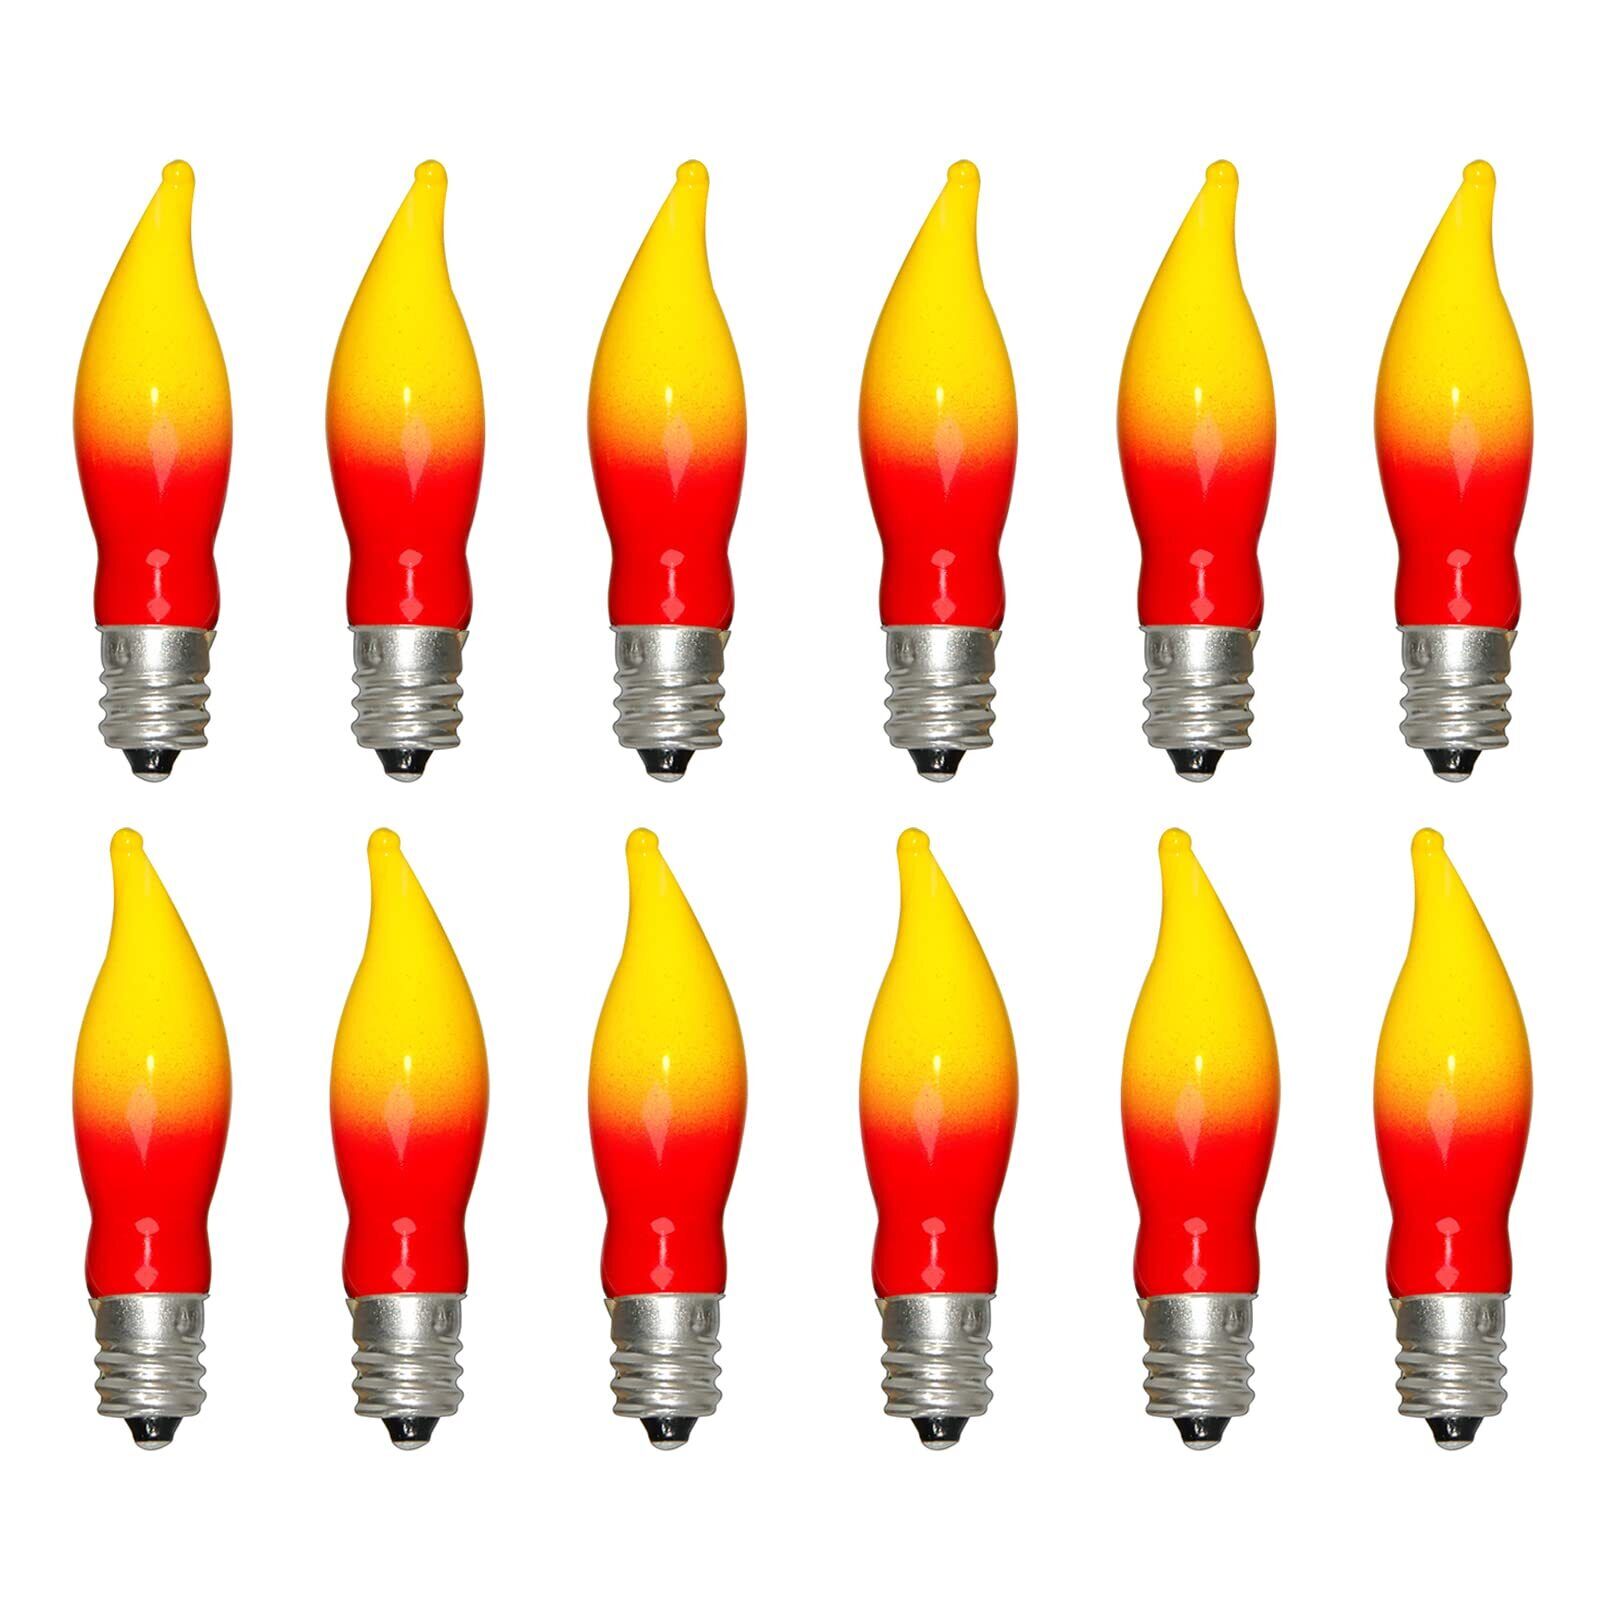 Pallerina Christmas Flame Shape Light Bulbs, Red Yellow Christmas Light Bulbs...